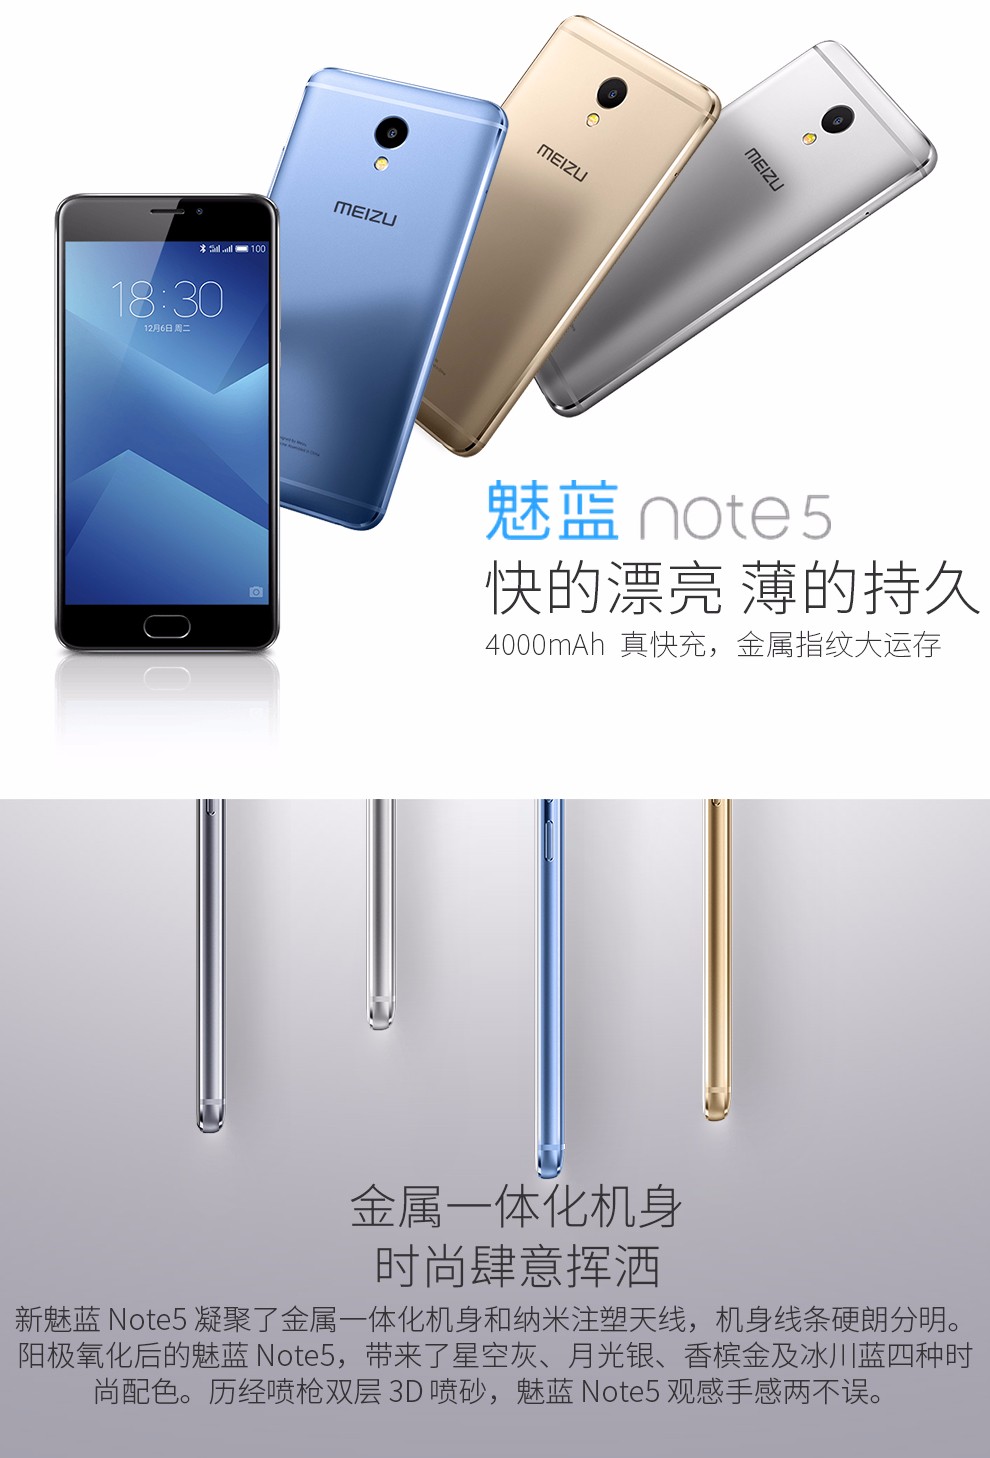 【新品现货】魅族 魅蓝Note5(全网通)5.5寸屏幕